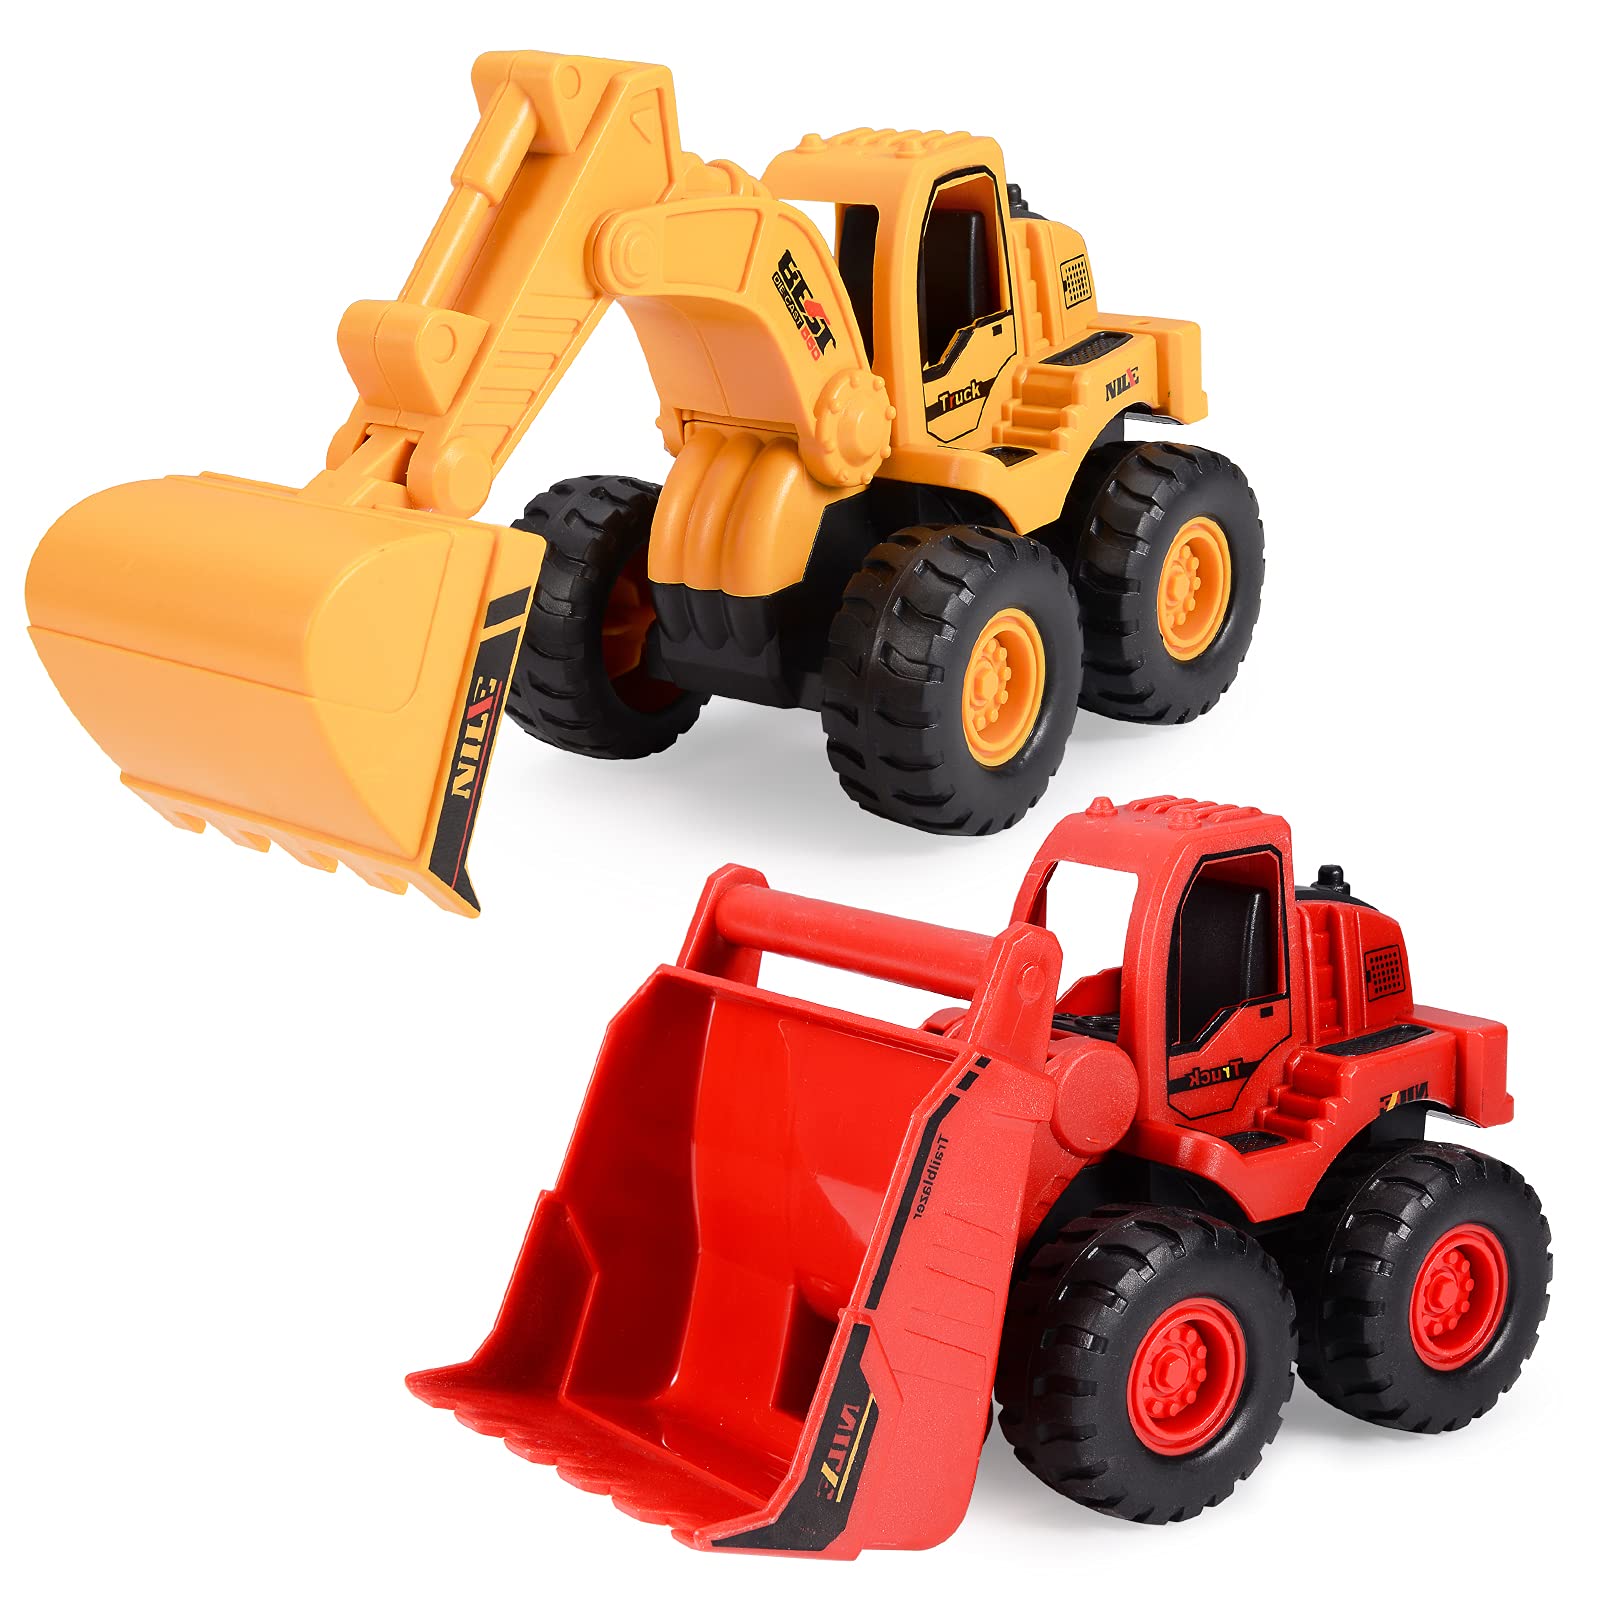 Beestech Truck Toys